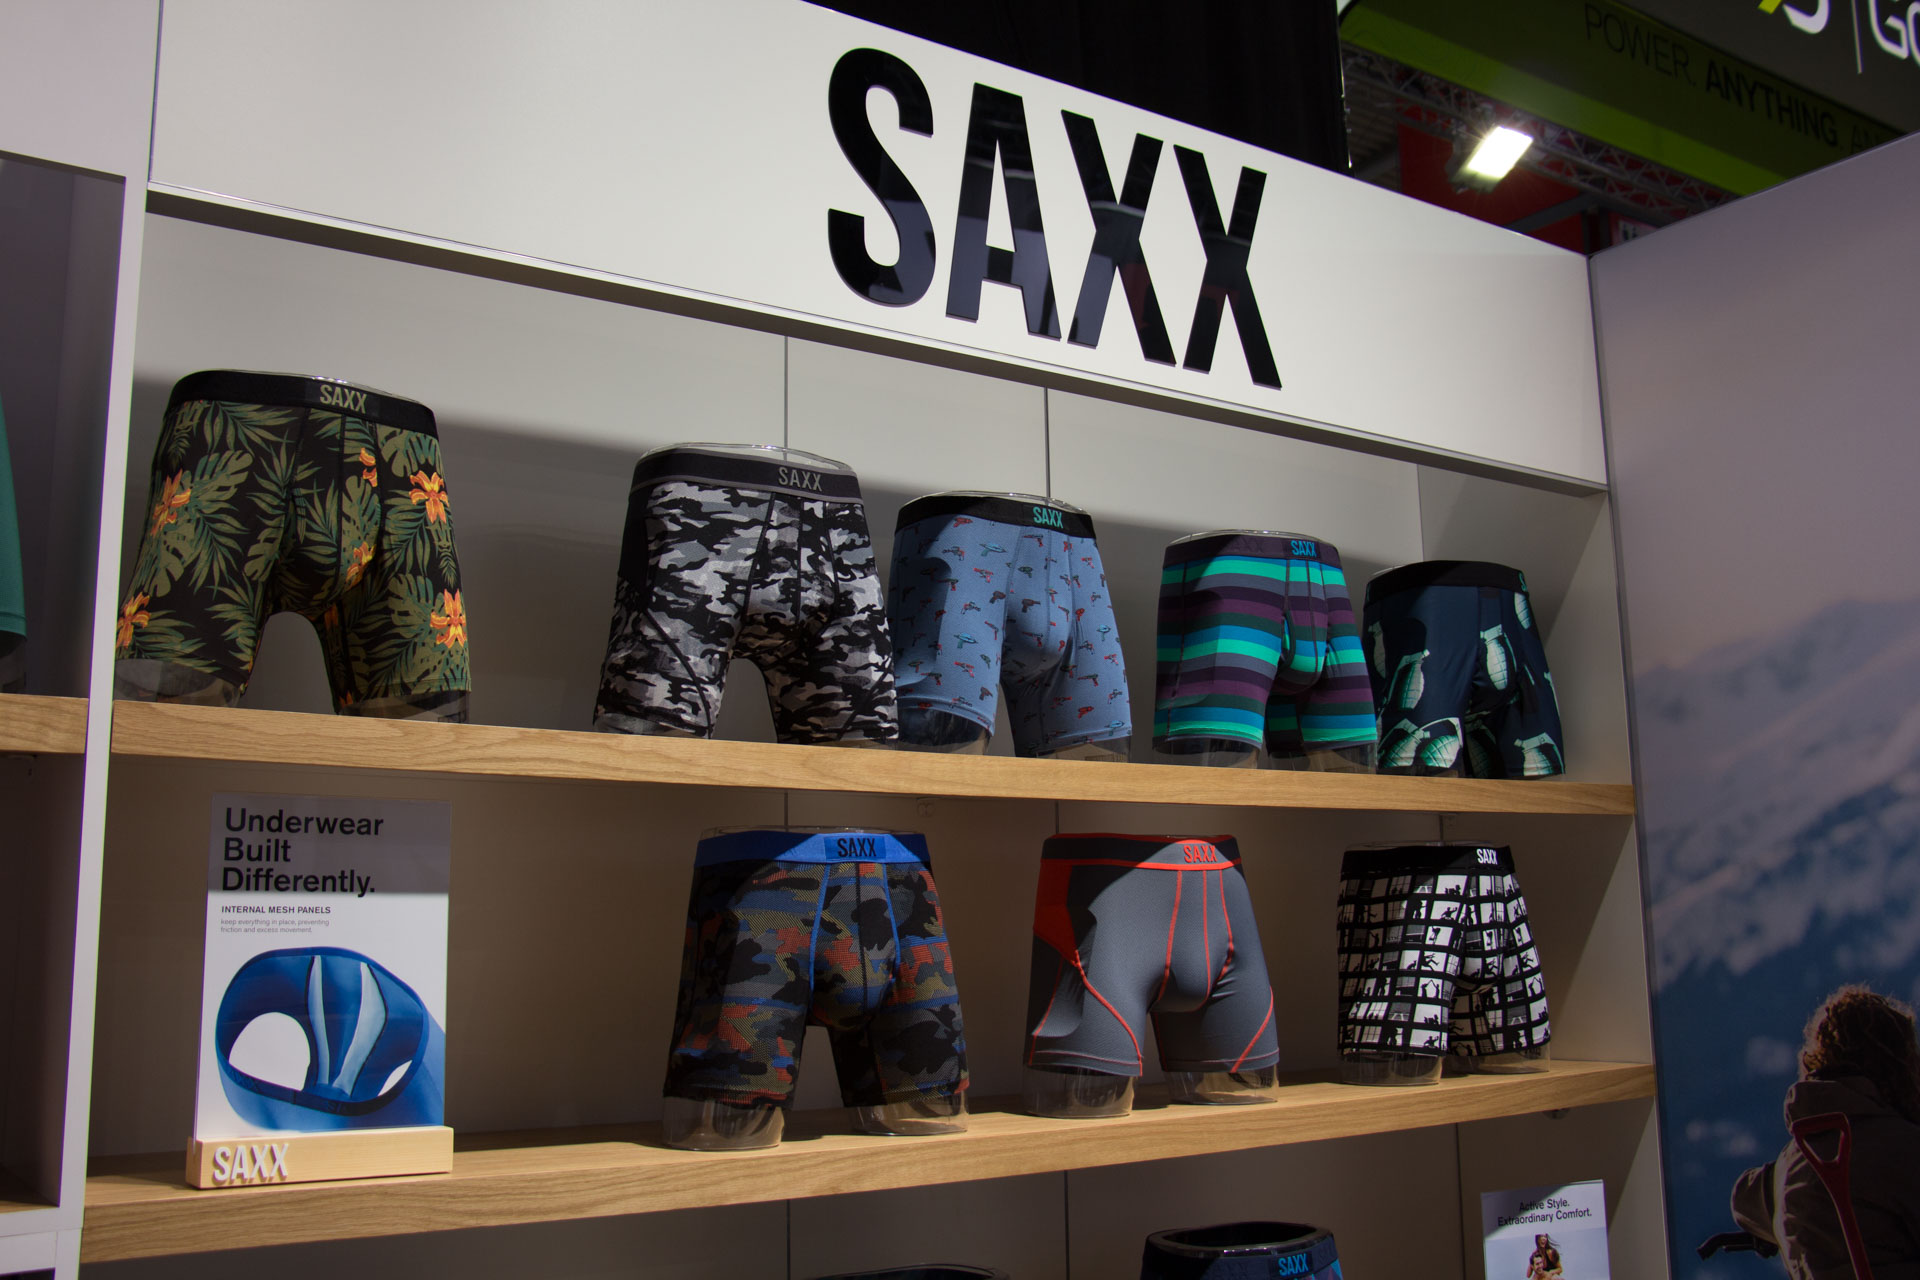 SAXX Snowboard Underwear 2017-2018 Preview - ISPO 20